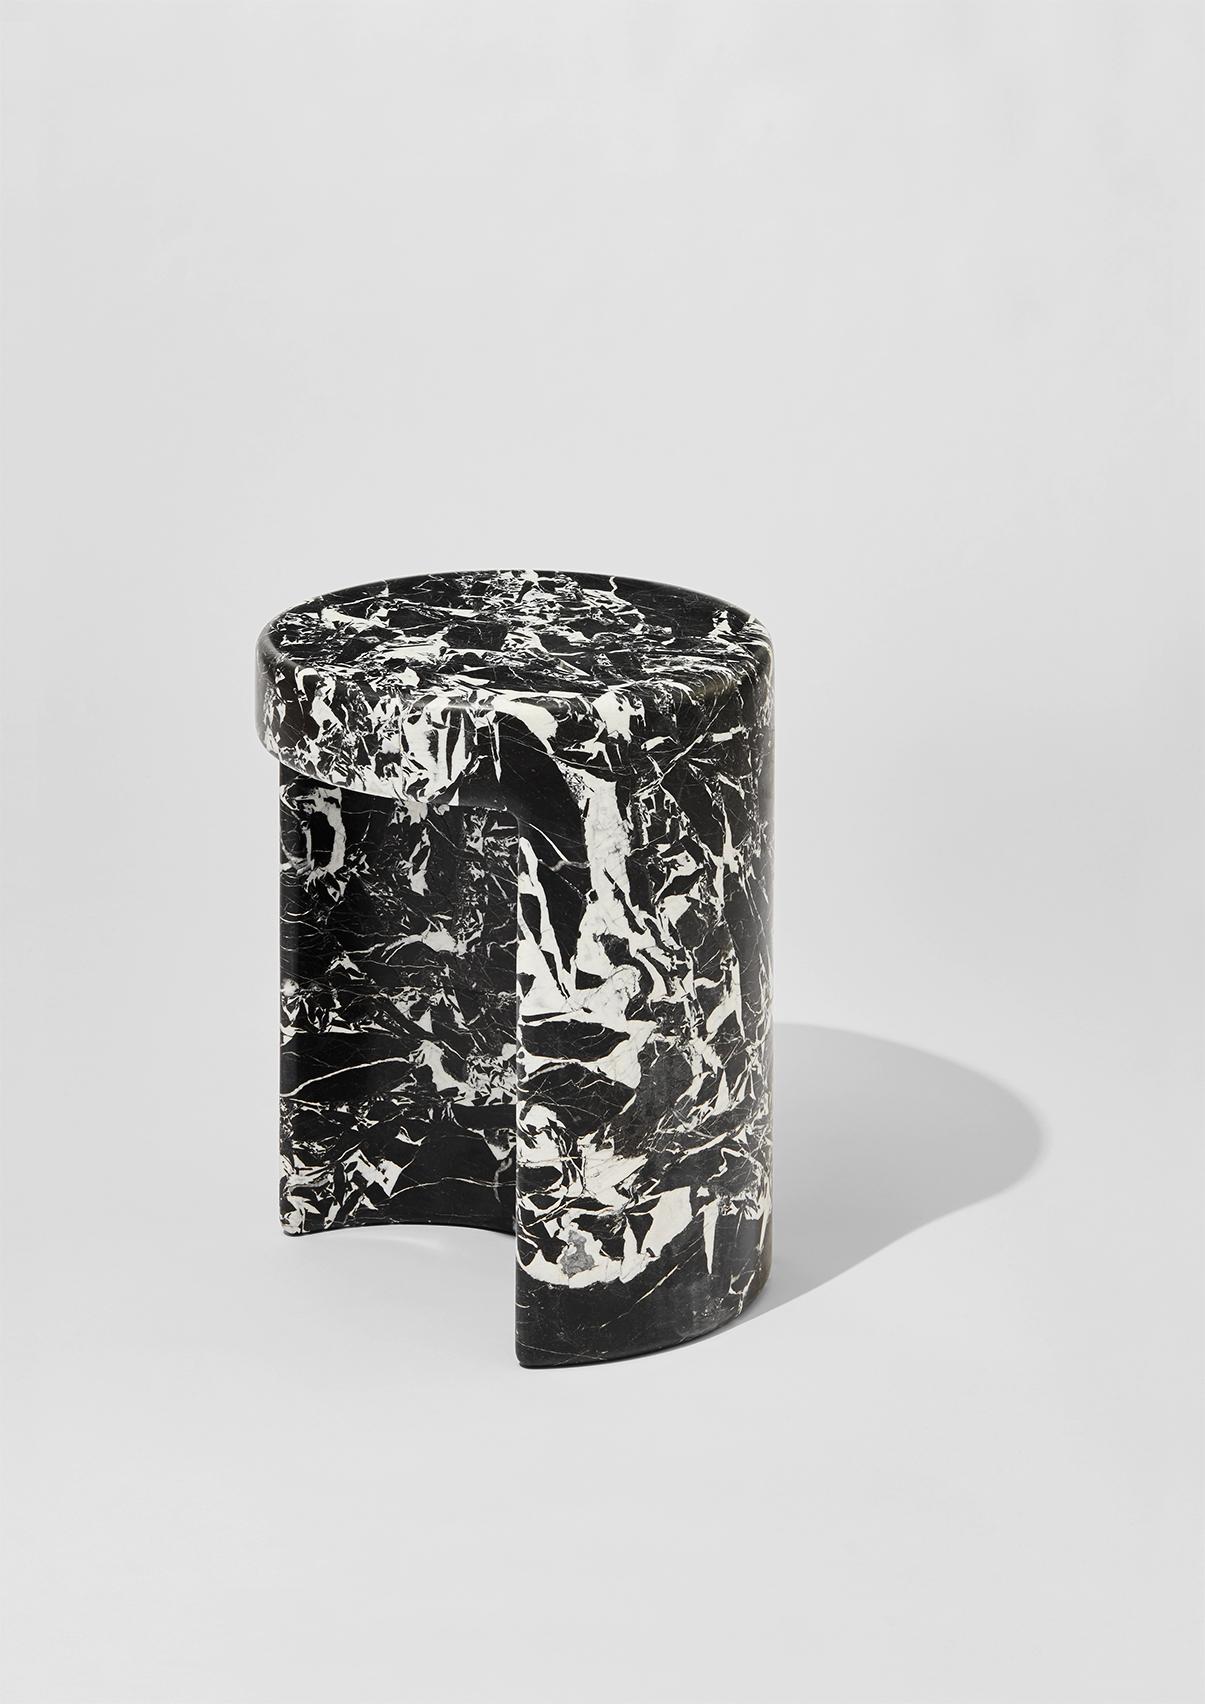 Tables d'appoint en marbre Métaphore conçues par Hervé Langlais pour la Galerie Negropontes à Paris, France. 

Hervé Langlais est diplômé de l'école d'architecture de Normandie à Rouen. Il a collaboré avec Paul Andreu pendant plus de quinze ans,